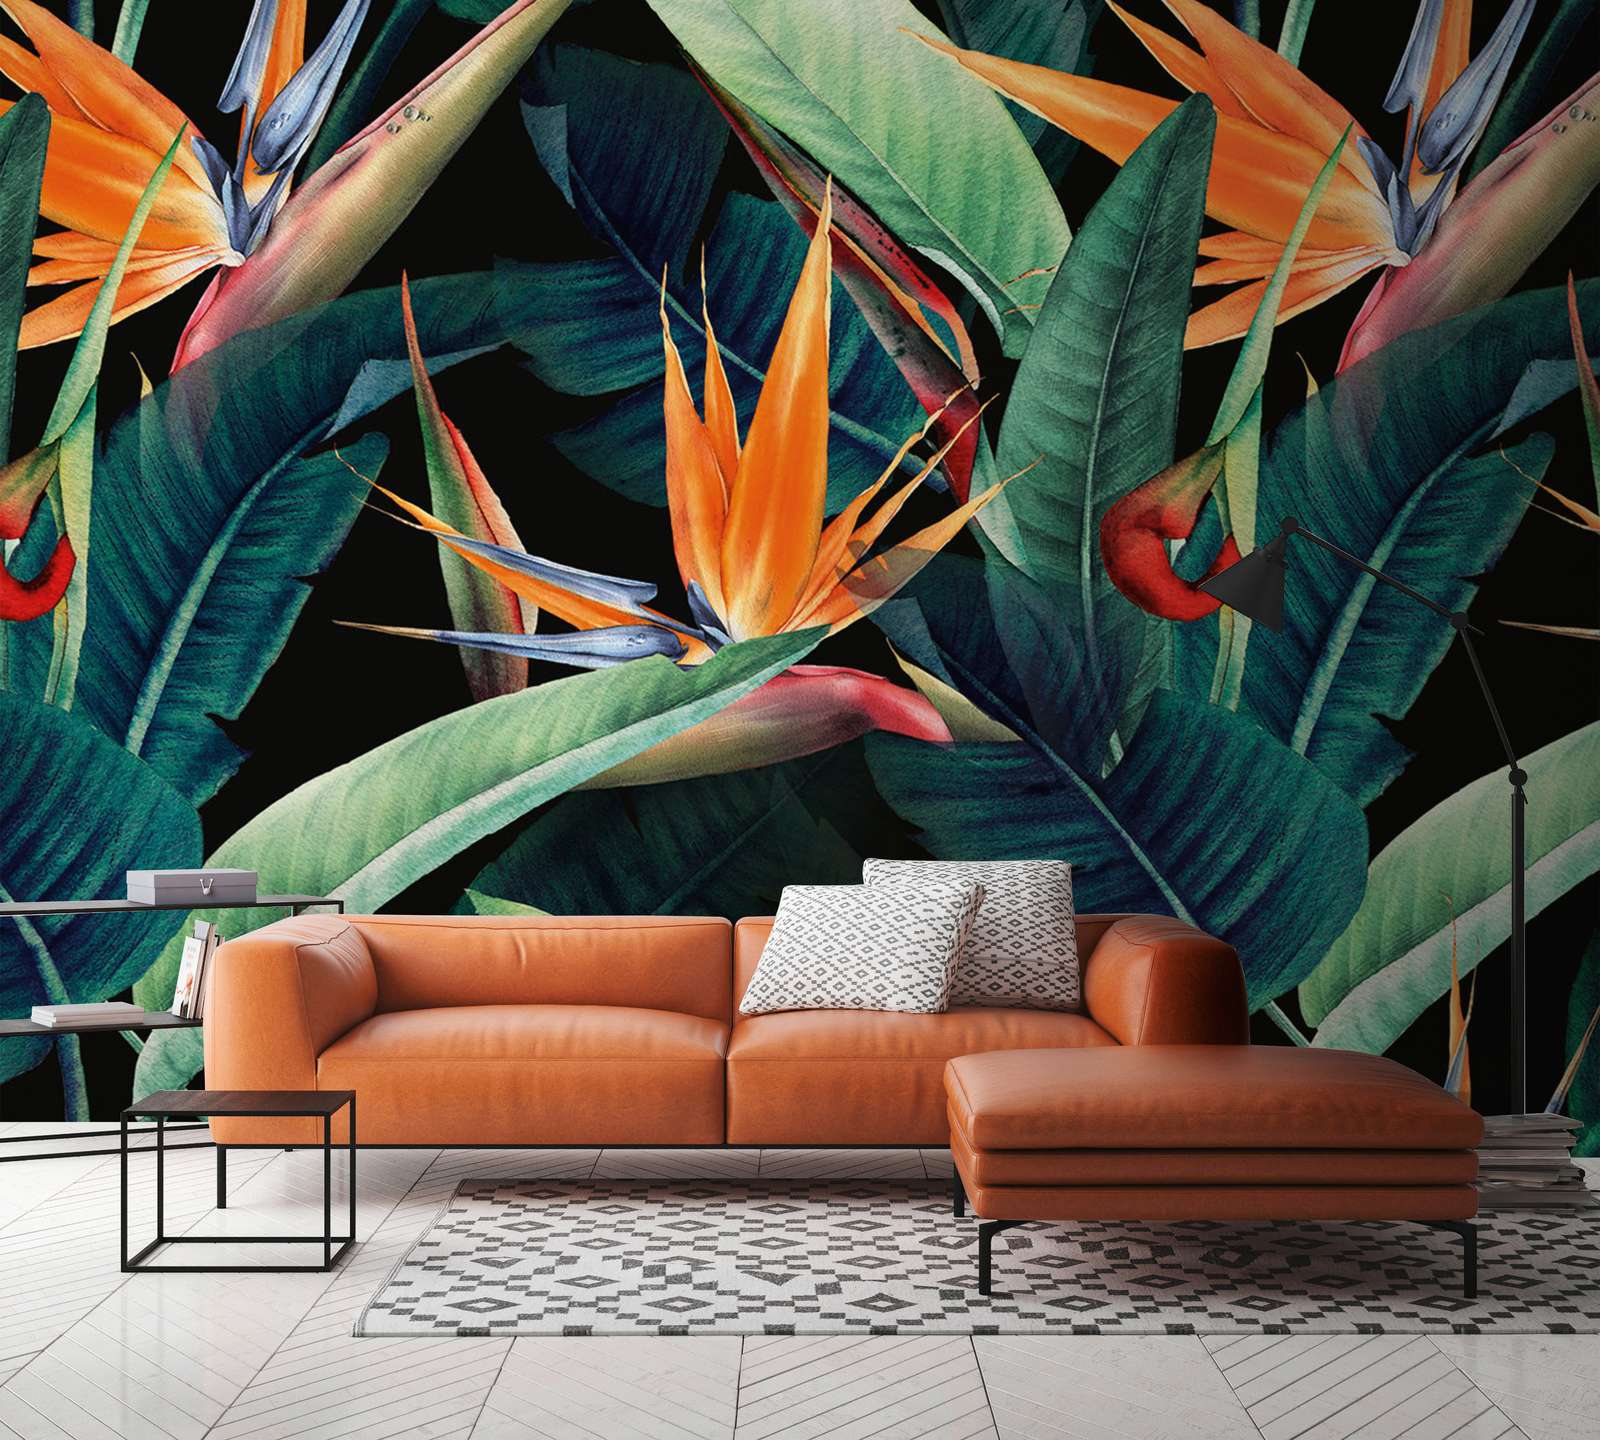             Digital behang Jungle motief geschilderd met bladeren - Groen, Oranje, Bont
        